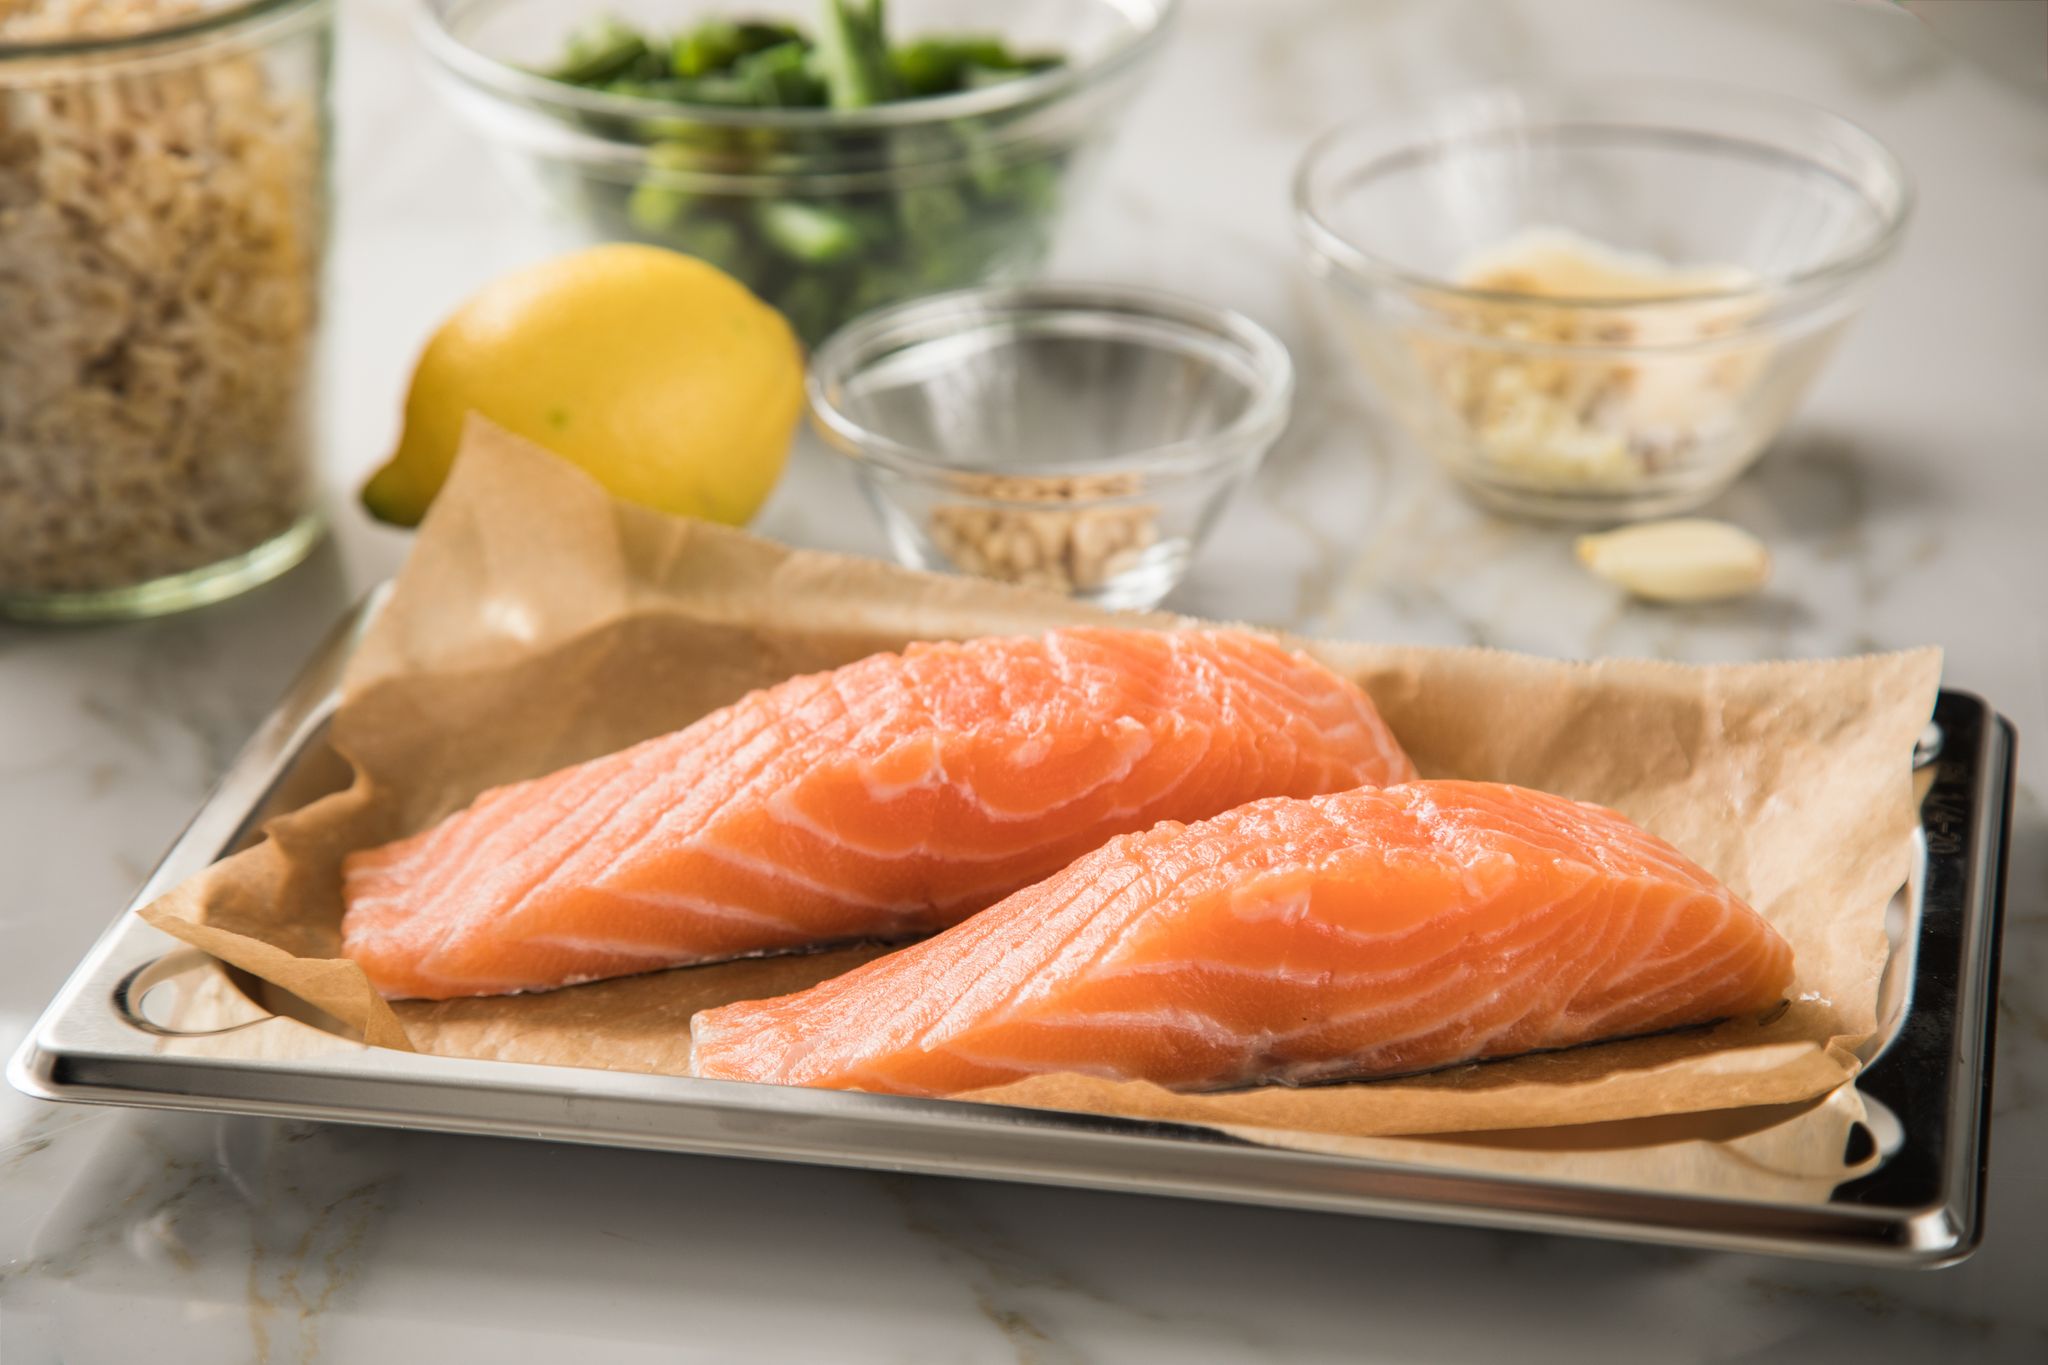 El salmón se caracteriza por ser uno de los pescados con altos niveles de grasas saludables omega-3 (Christin Klose/dpa)